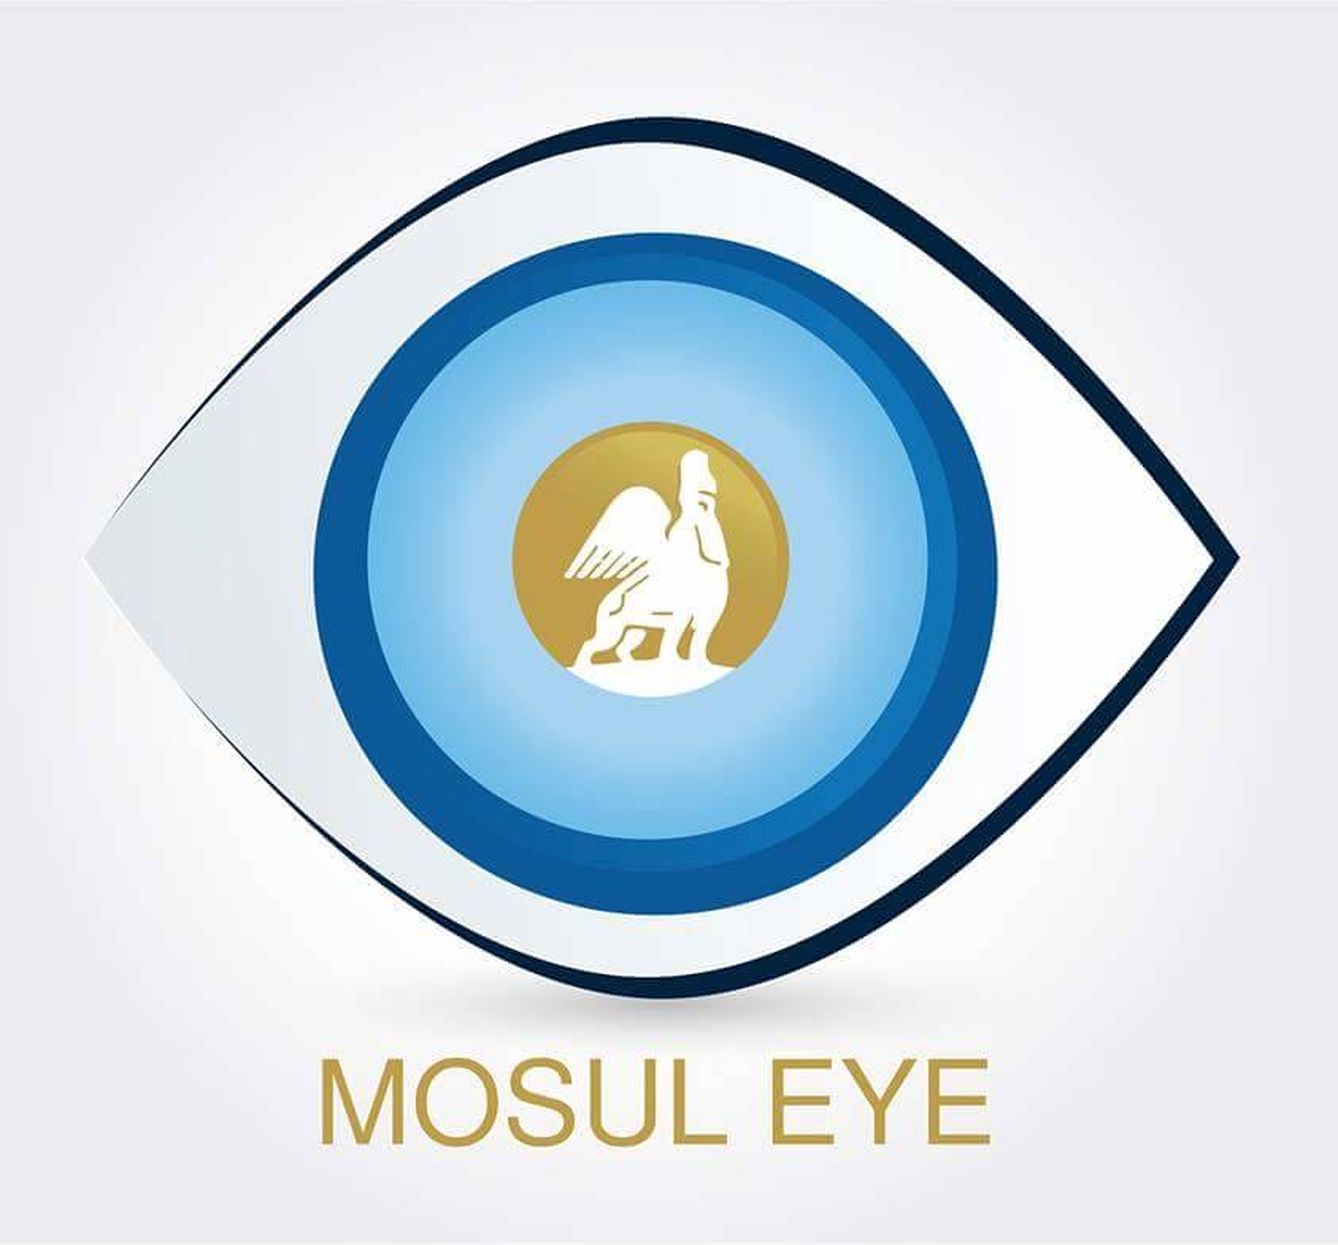 El logo del proyecto fundado en Mosul por el profesor de historia. (Mosul Eye)